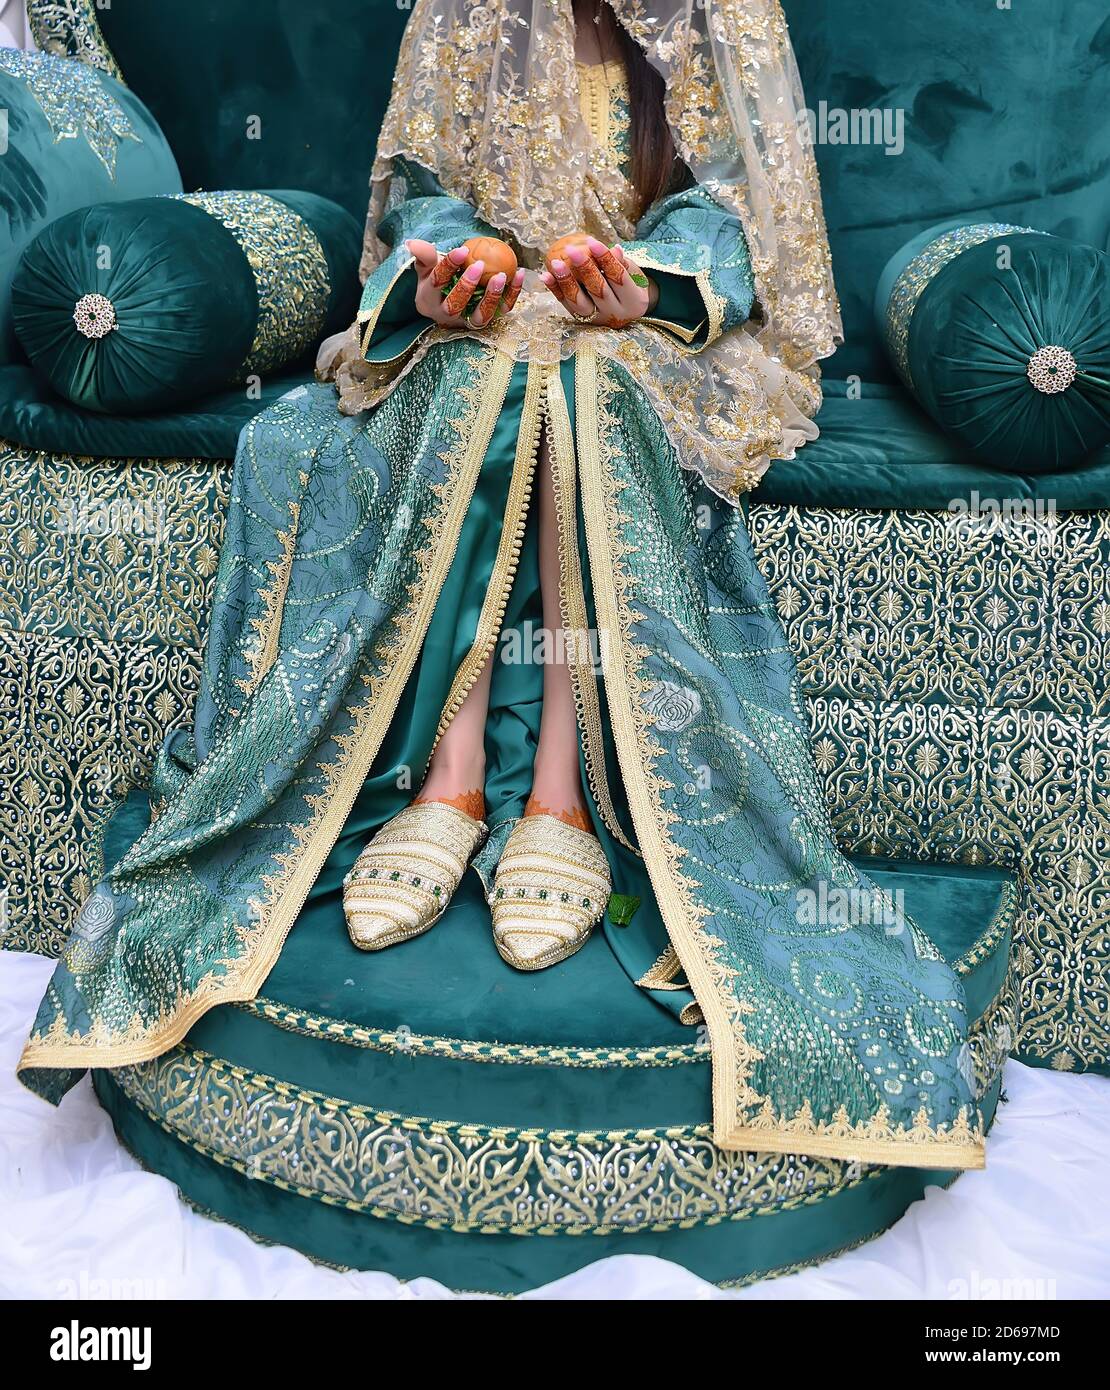 La robe traditionnelle de la mariée marocaine. Belle mariée portant caftan marocain et bijoux précieux Banque D'Images